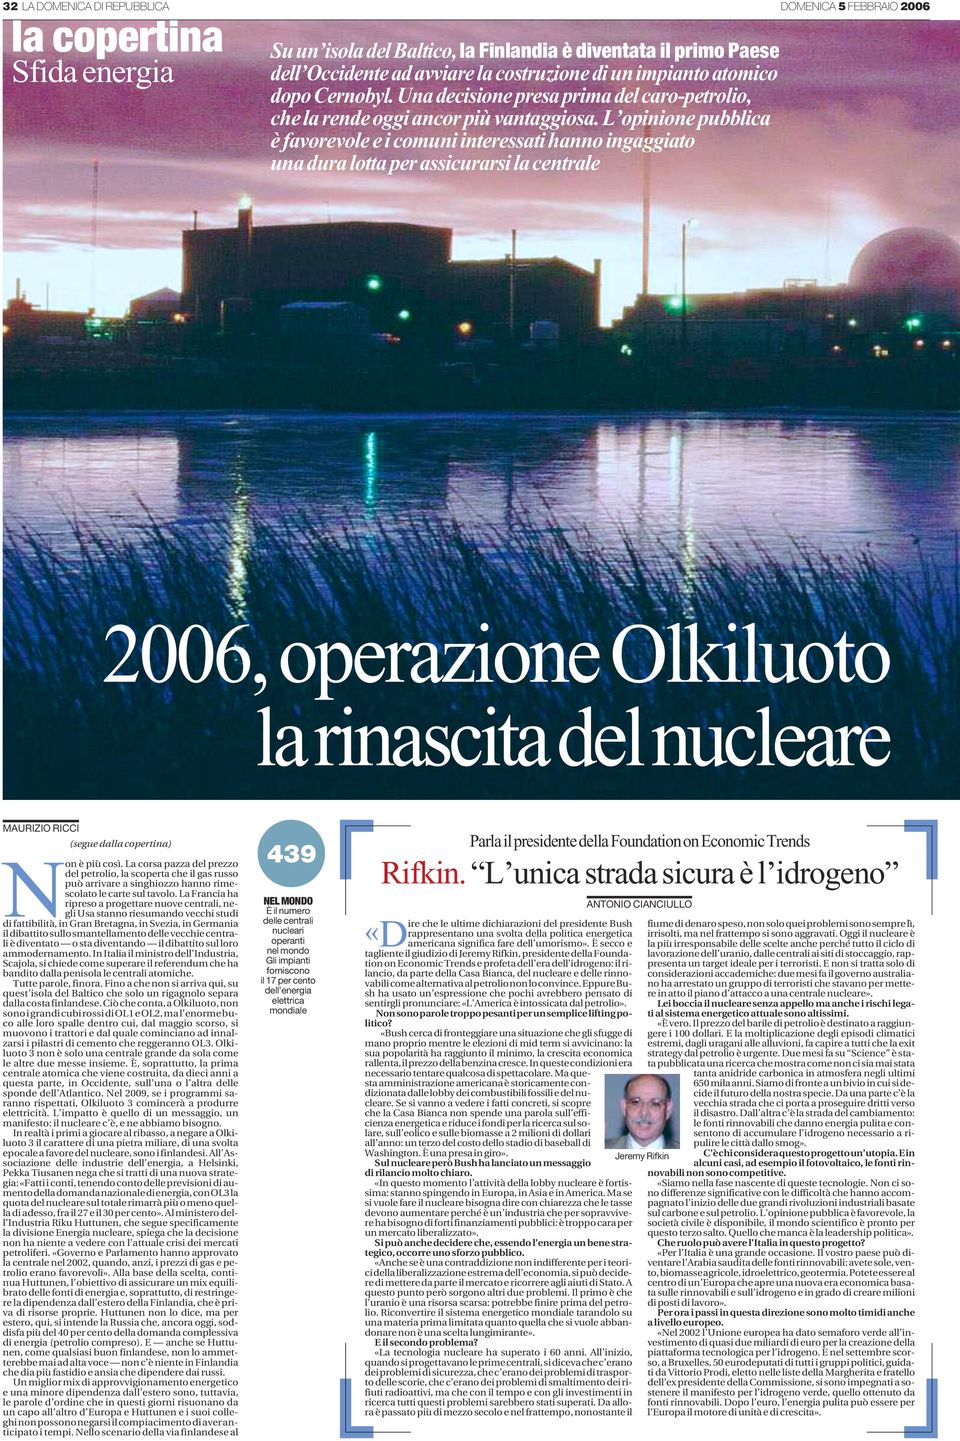 L opinione pubblica è favorevole e i comuni interessati hanno ingaggiato una dura lotta per assicurarsi la centrale 2006, operazione Olkiluoto la rinascita del nucleare MAURIZIO RICCI (segue dalla